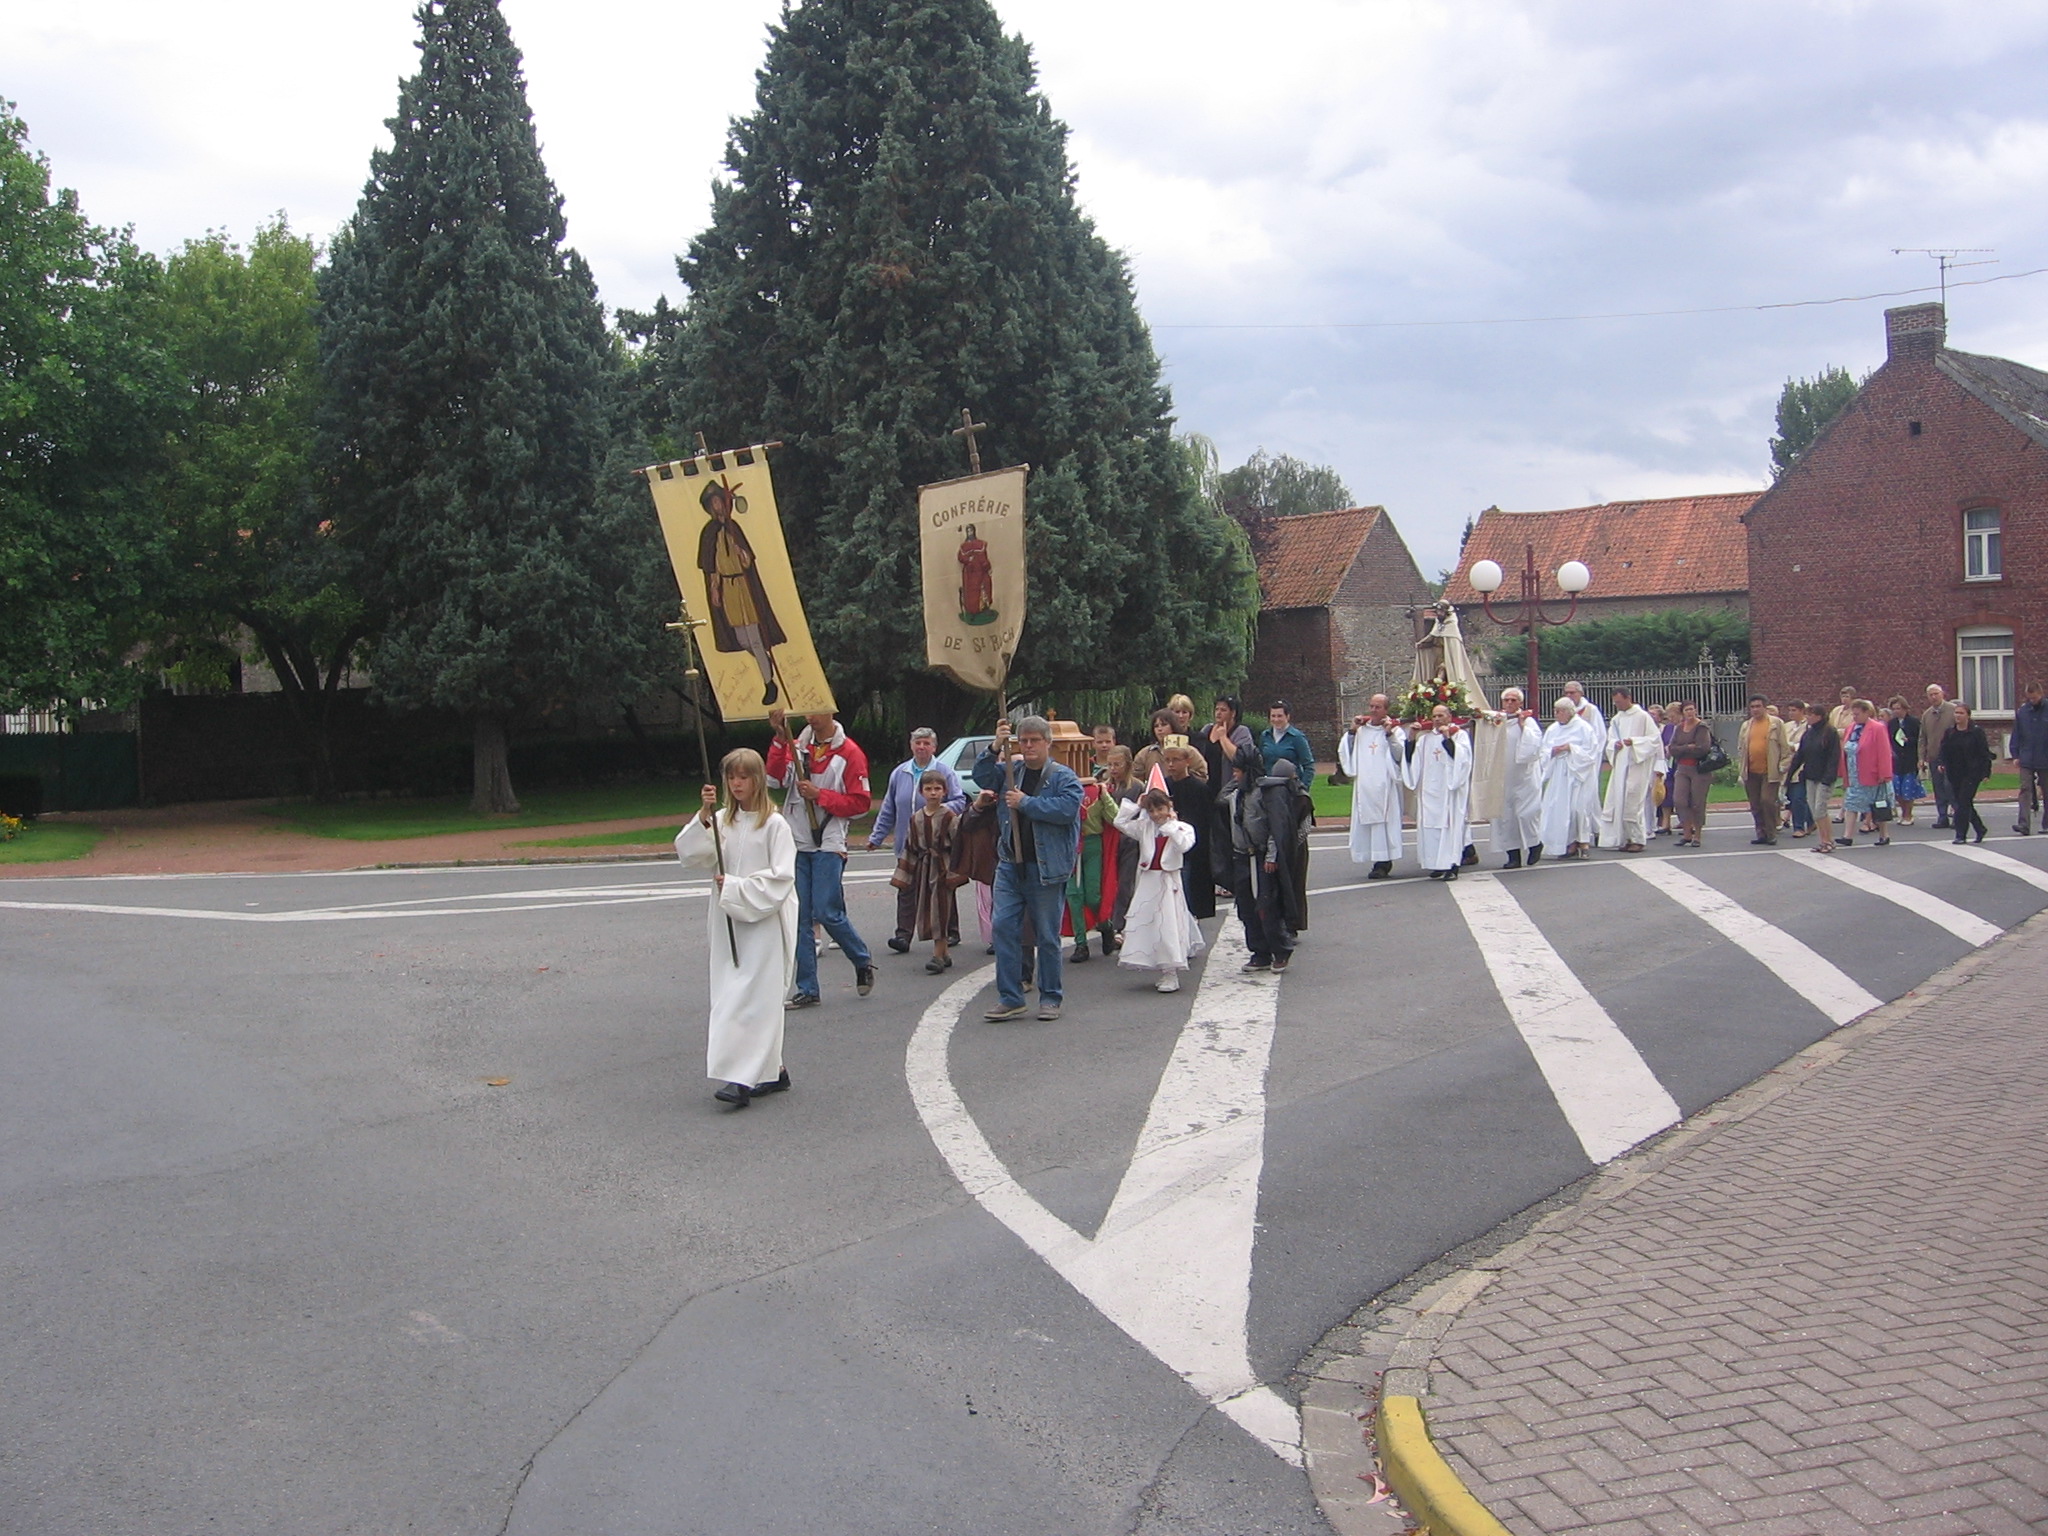 La procession se dirige vers la chapelle St Roch d'Hergnies